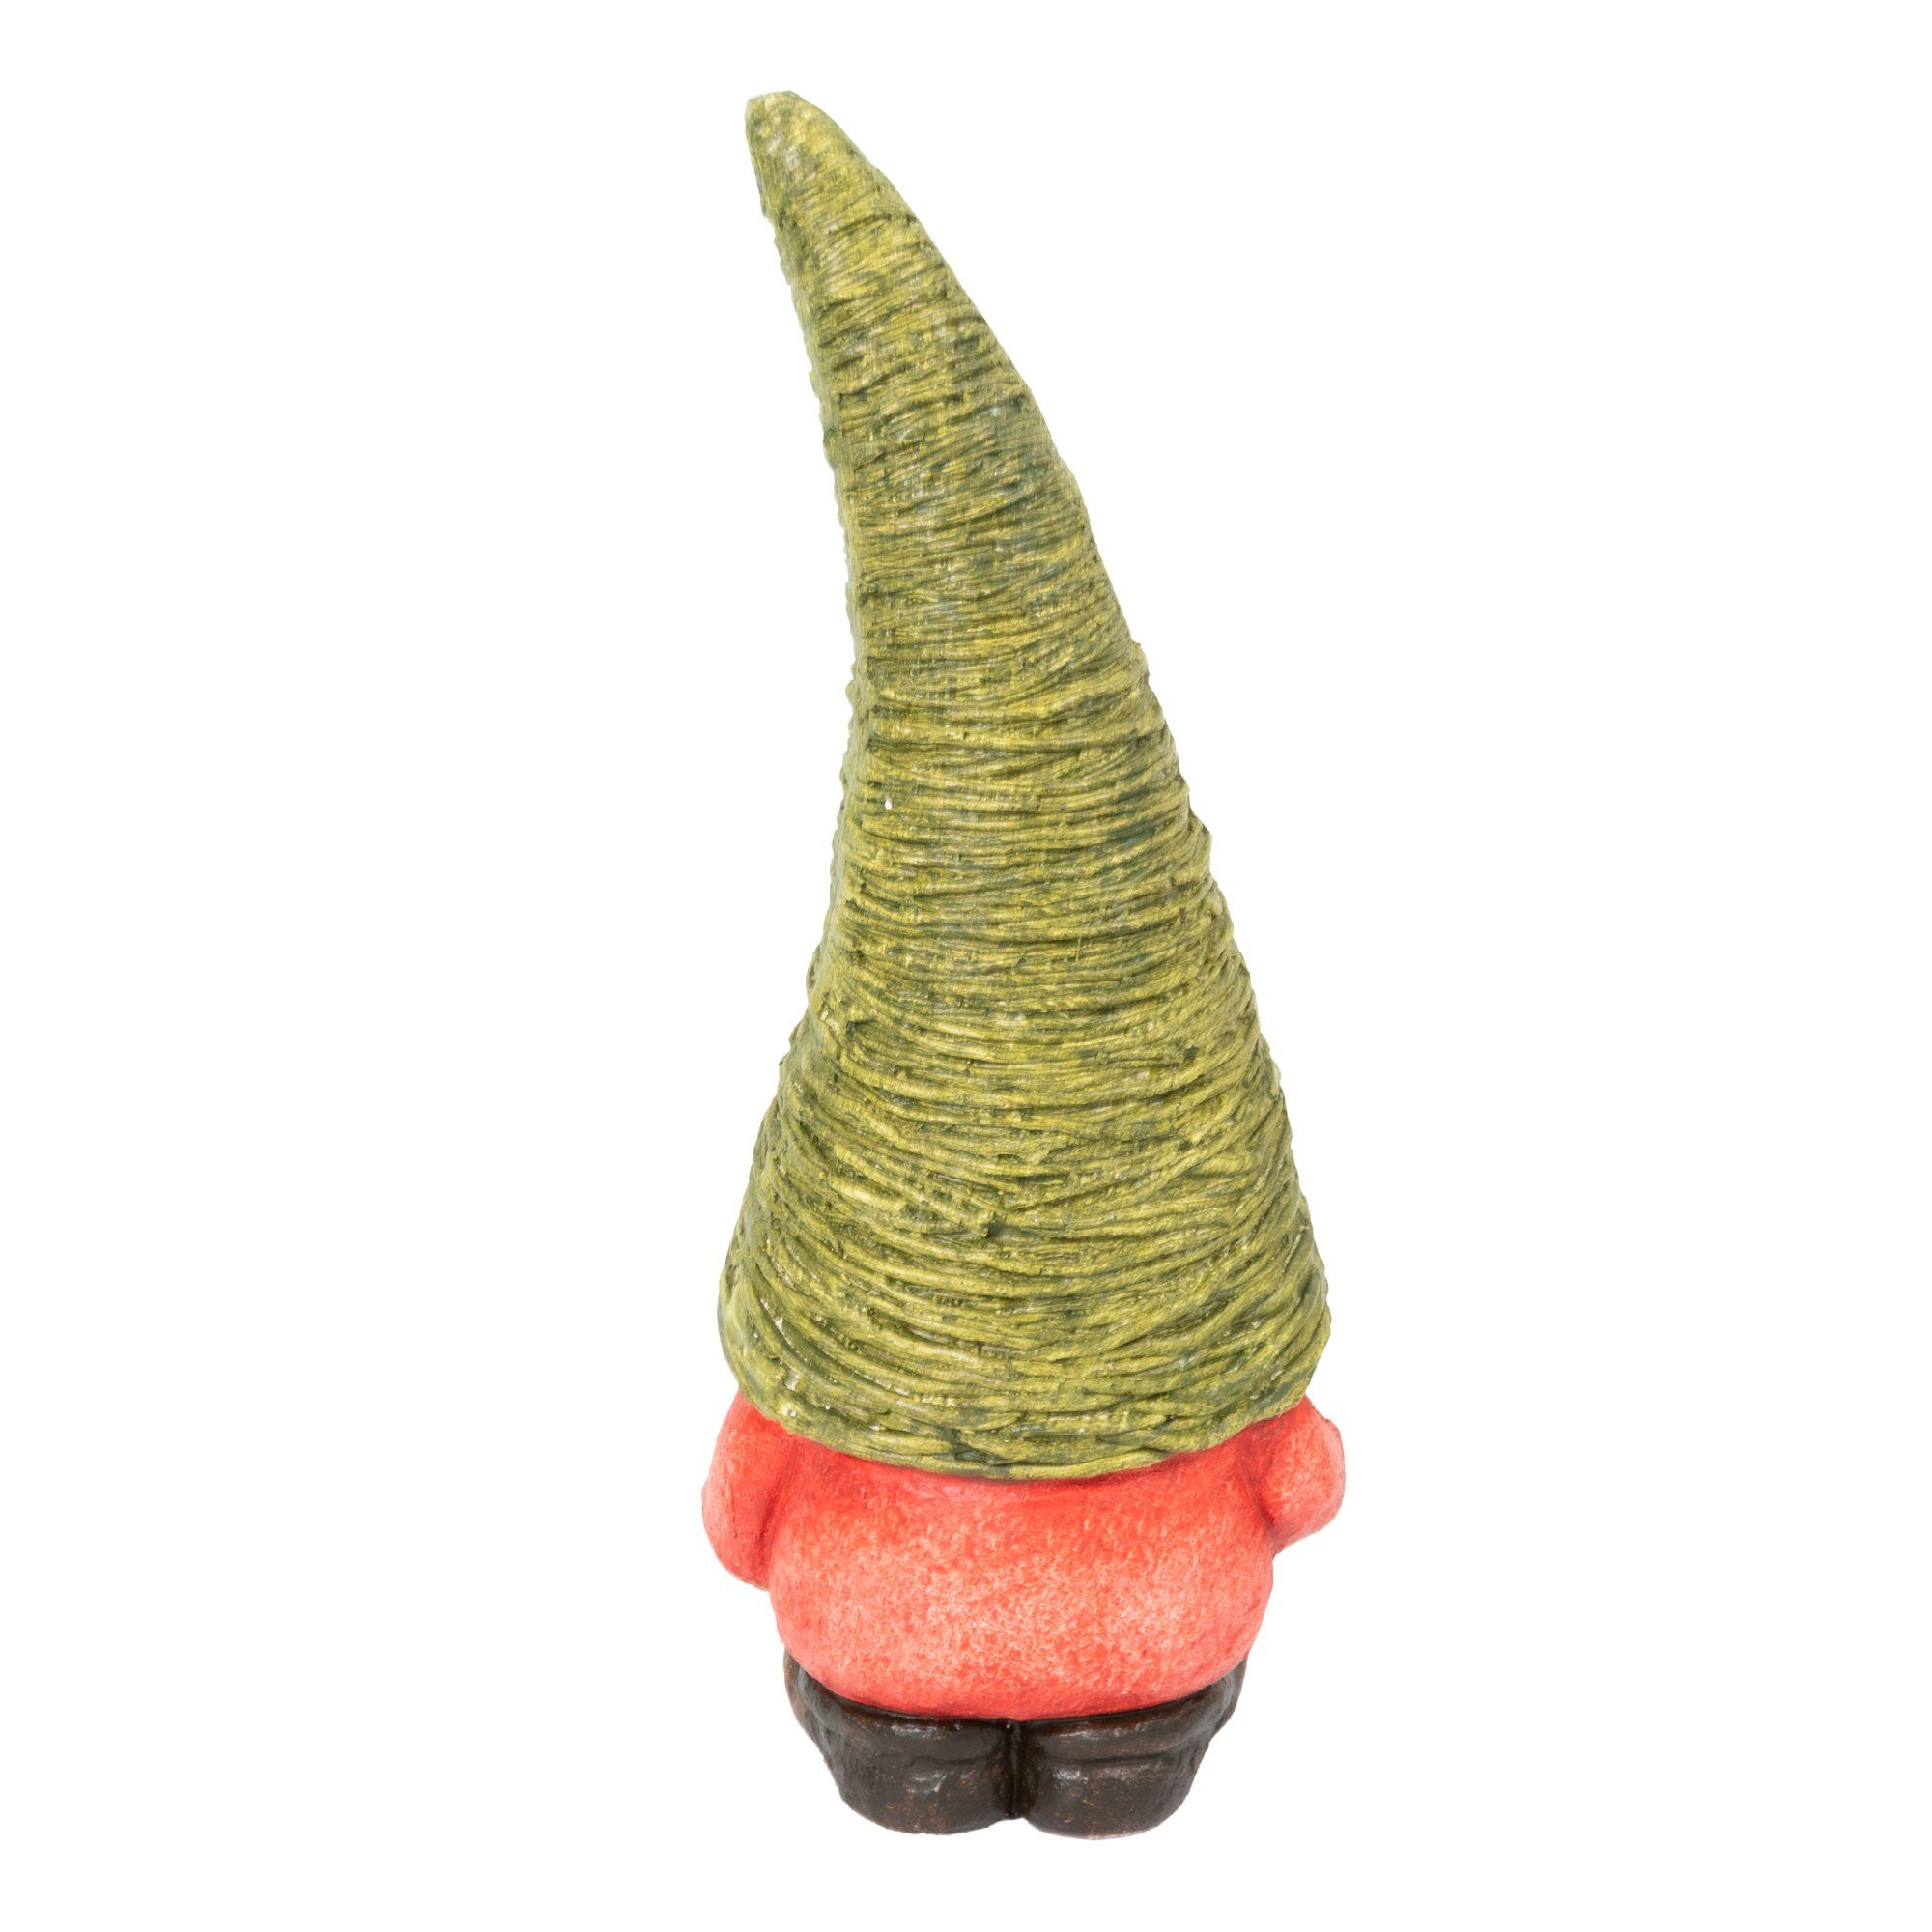 Lemodo Wichtel Gnome aus Magnesia, Außen und Innen Gartendeko grün für